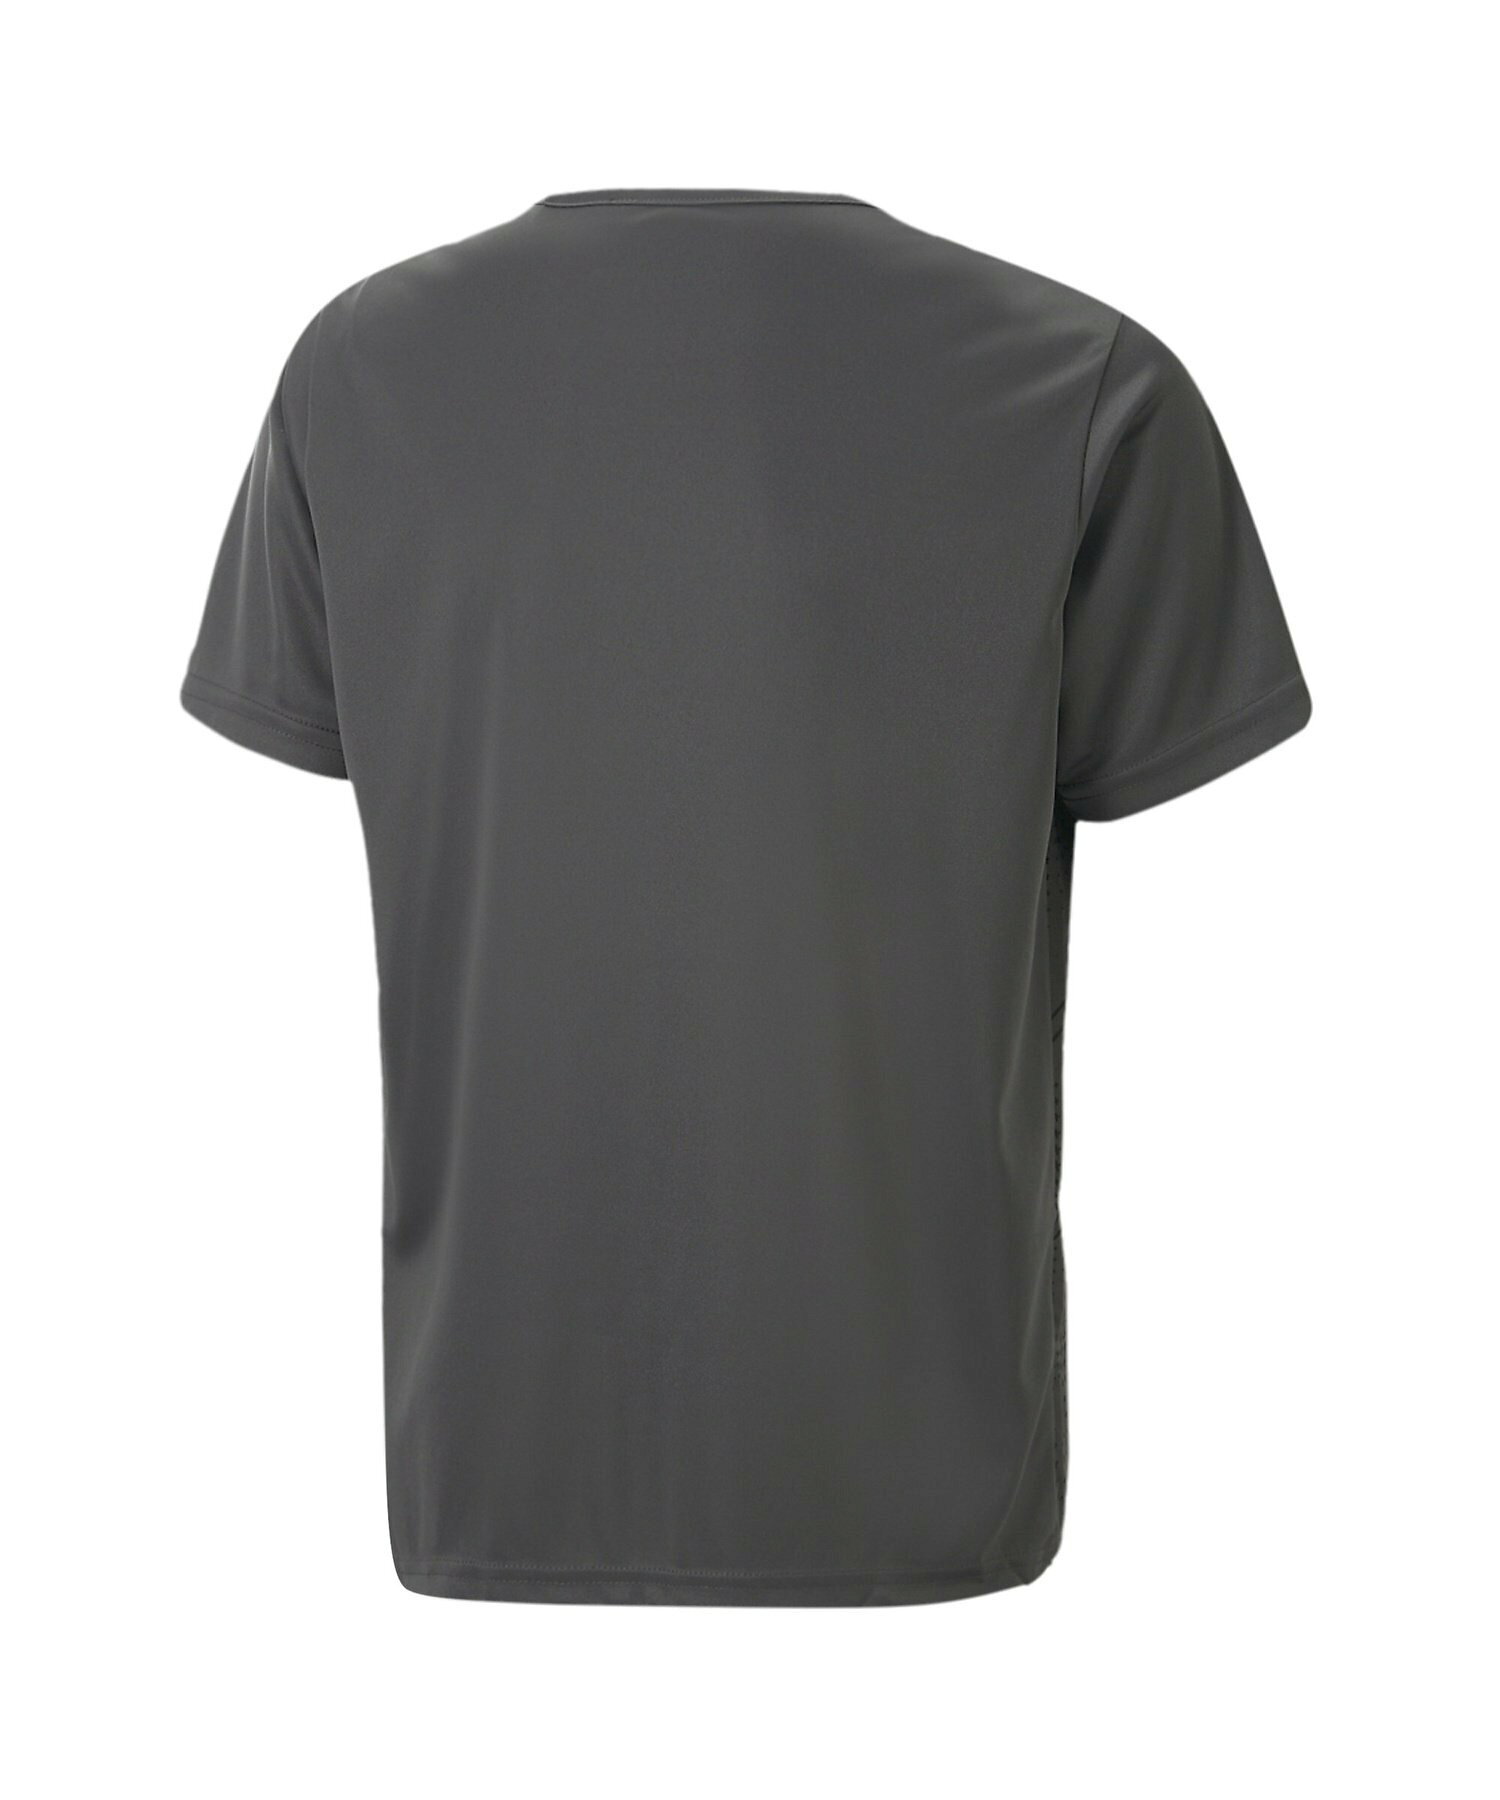 キッズ ボーイズ サッカー INDIVIDUALRISE グラフィック Tシャツ 130-160cm